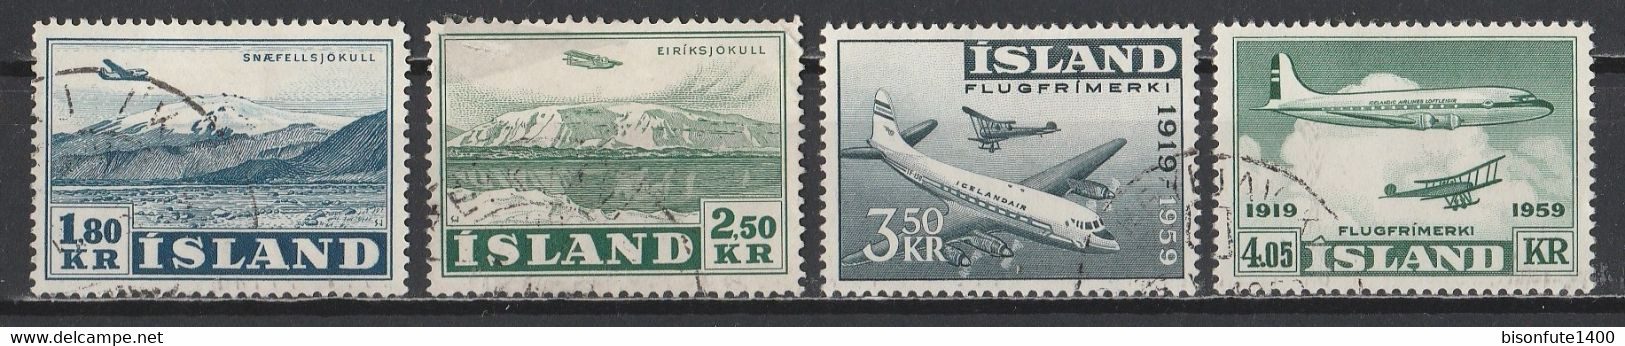 Islande Aérien 1952 Et 1959 : Timbres Yvert & Tellier N° 27 - 28 - 30 Et 31 Oblitérés. - Poste Aérienne